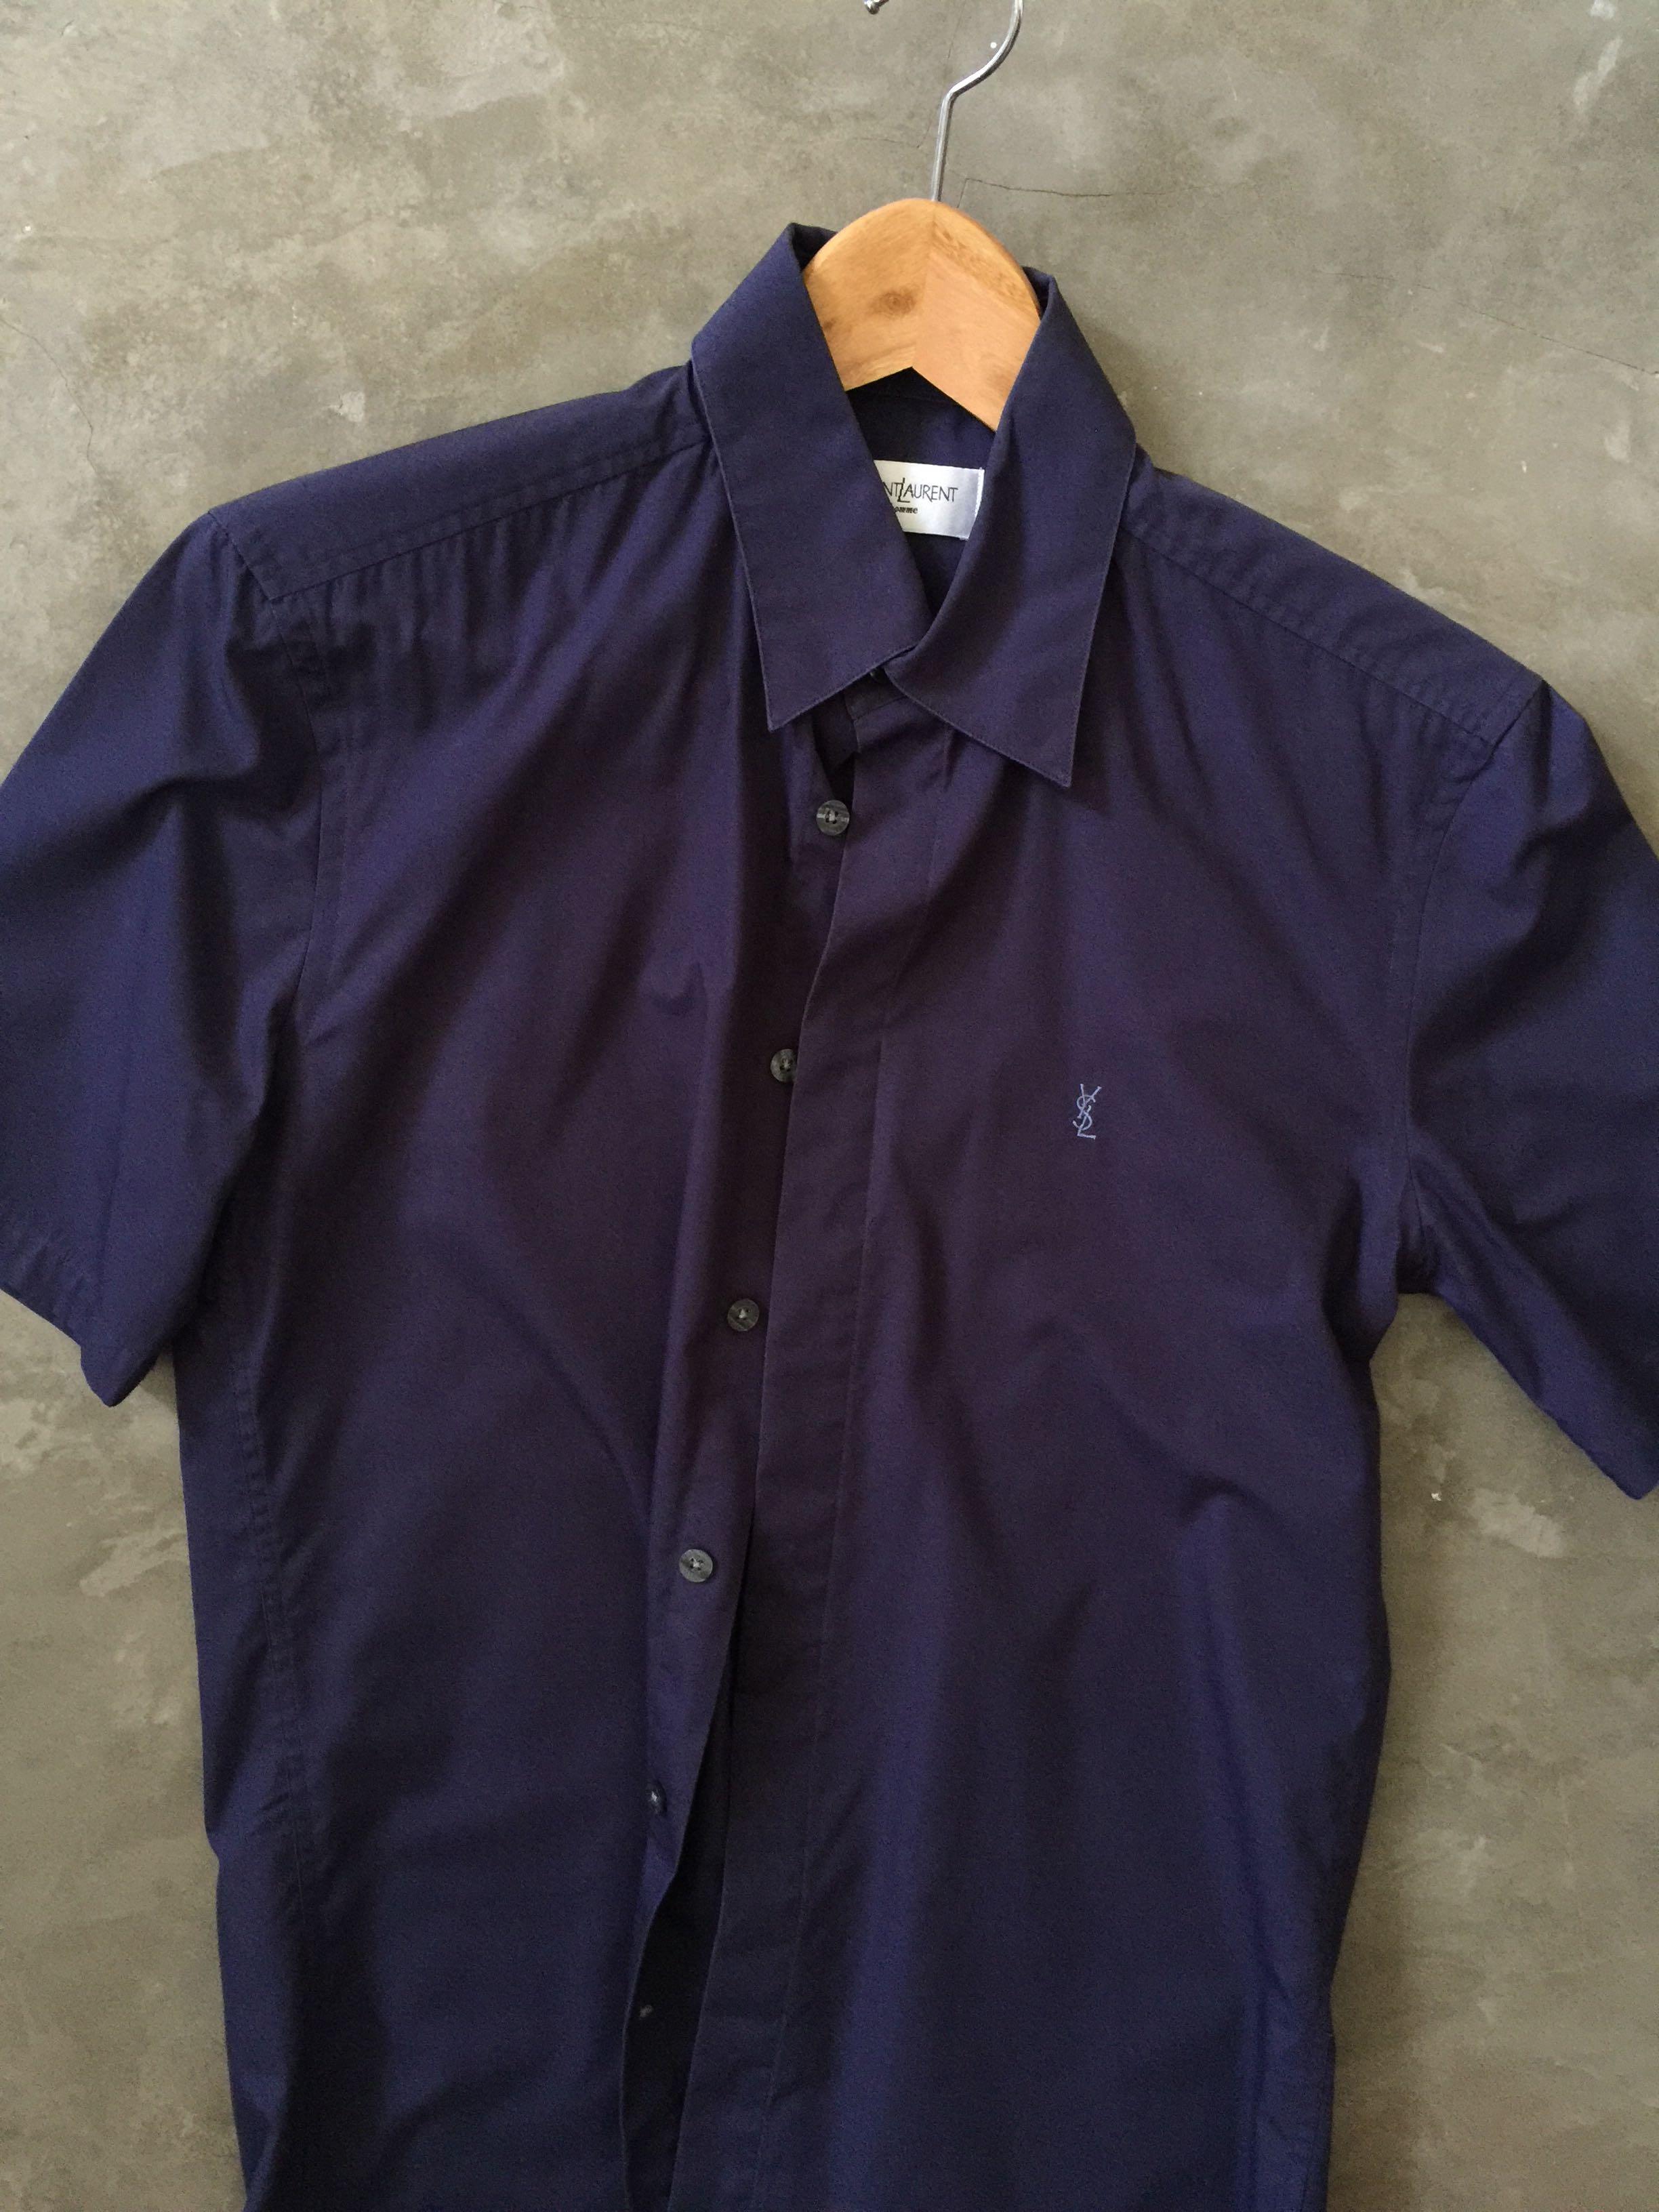 Ysl saint laurent navy blue short sleeve shirt authentic, Men's Fashion ...